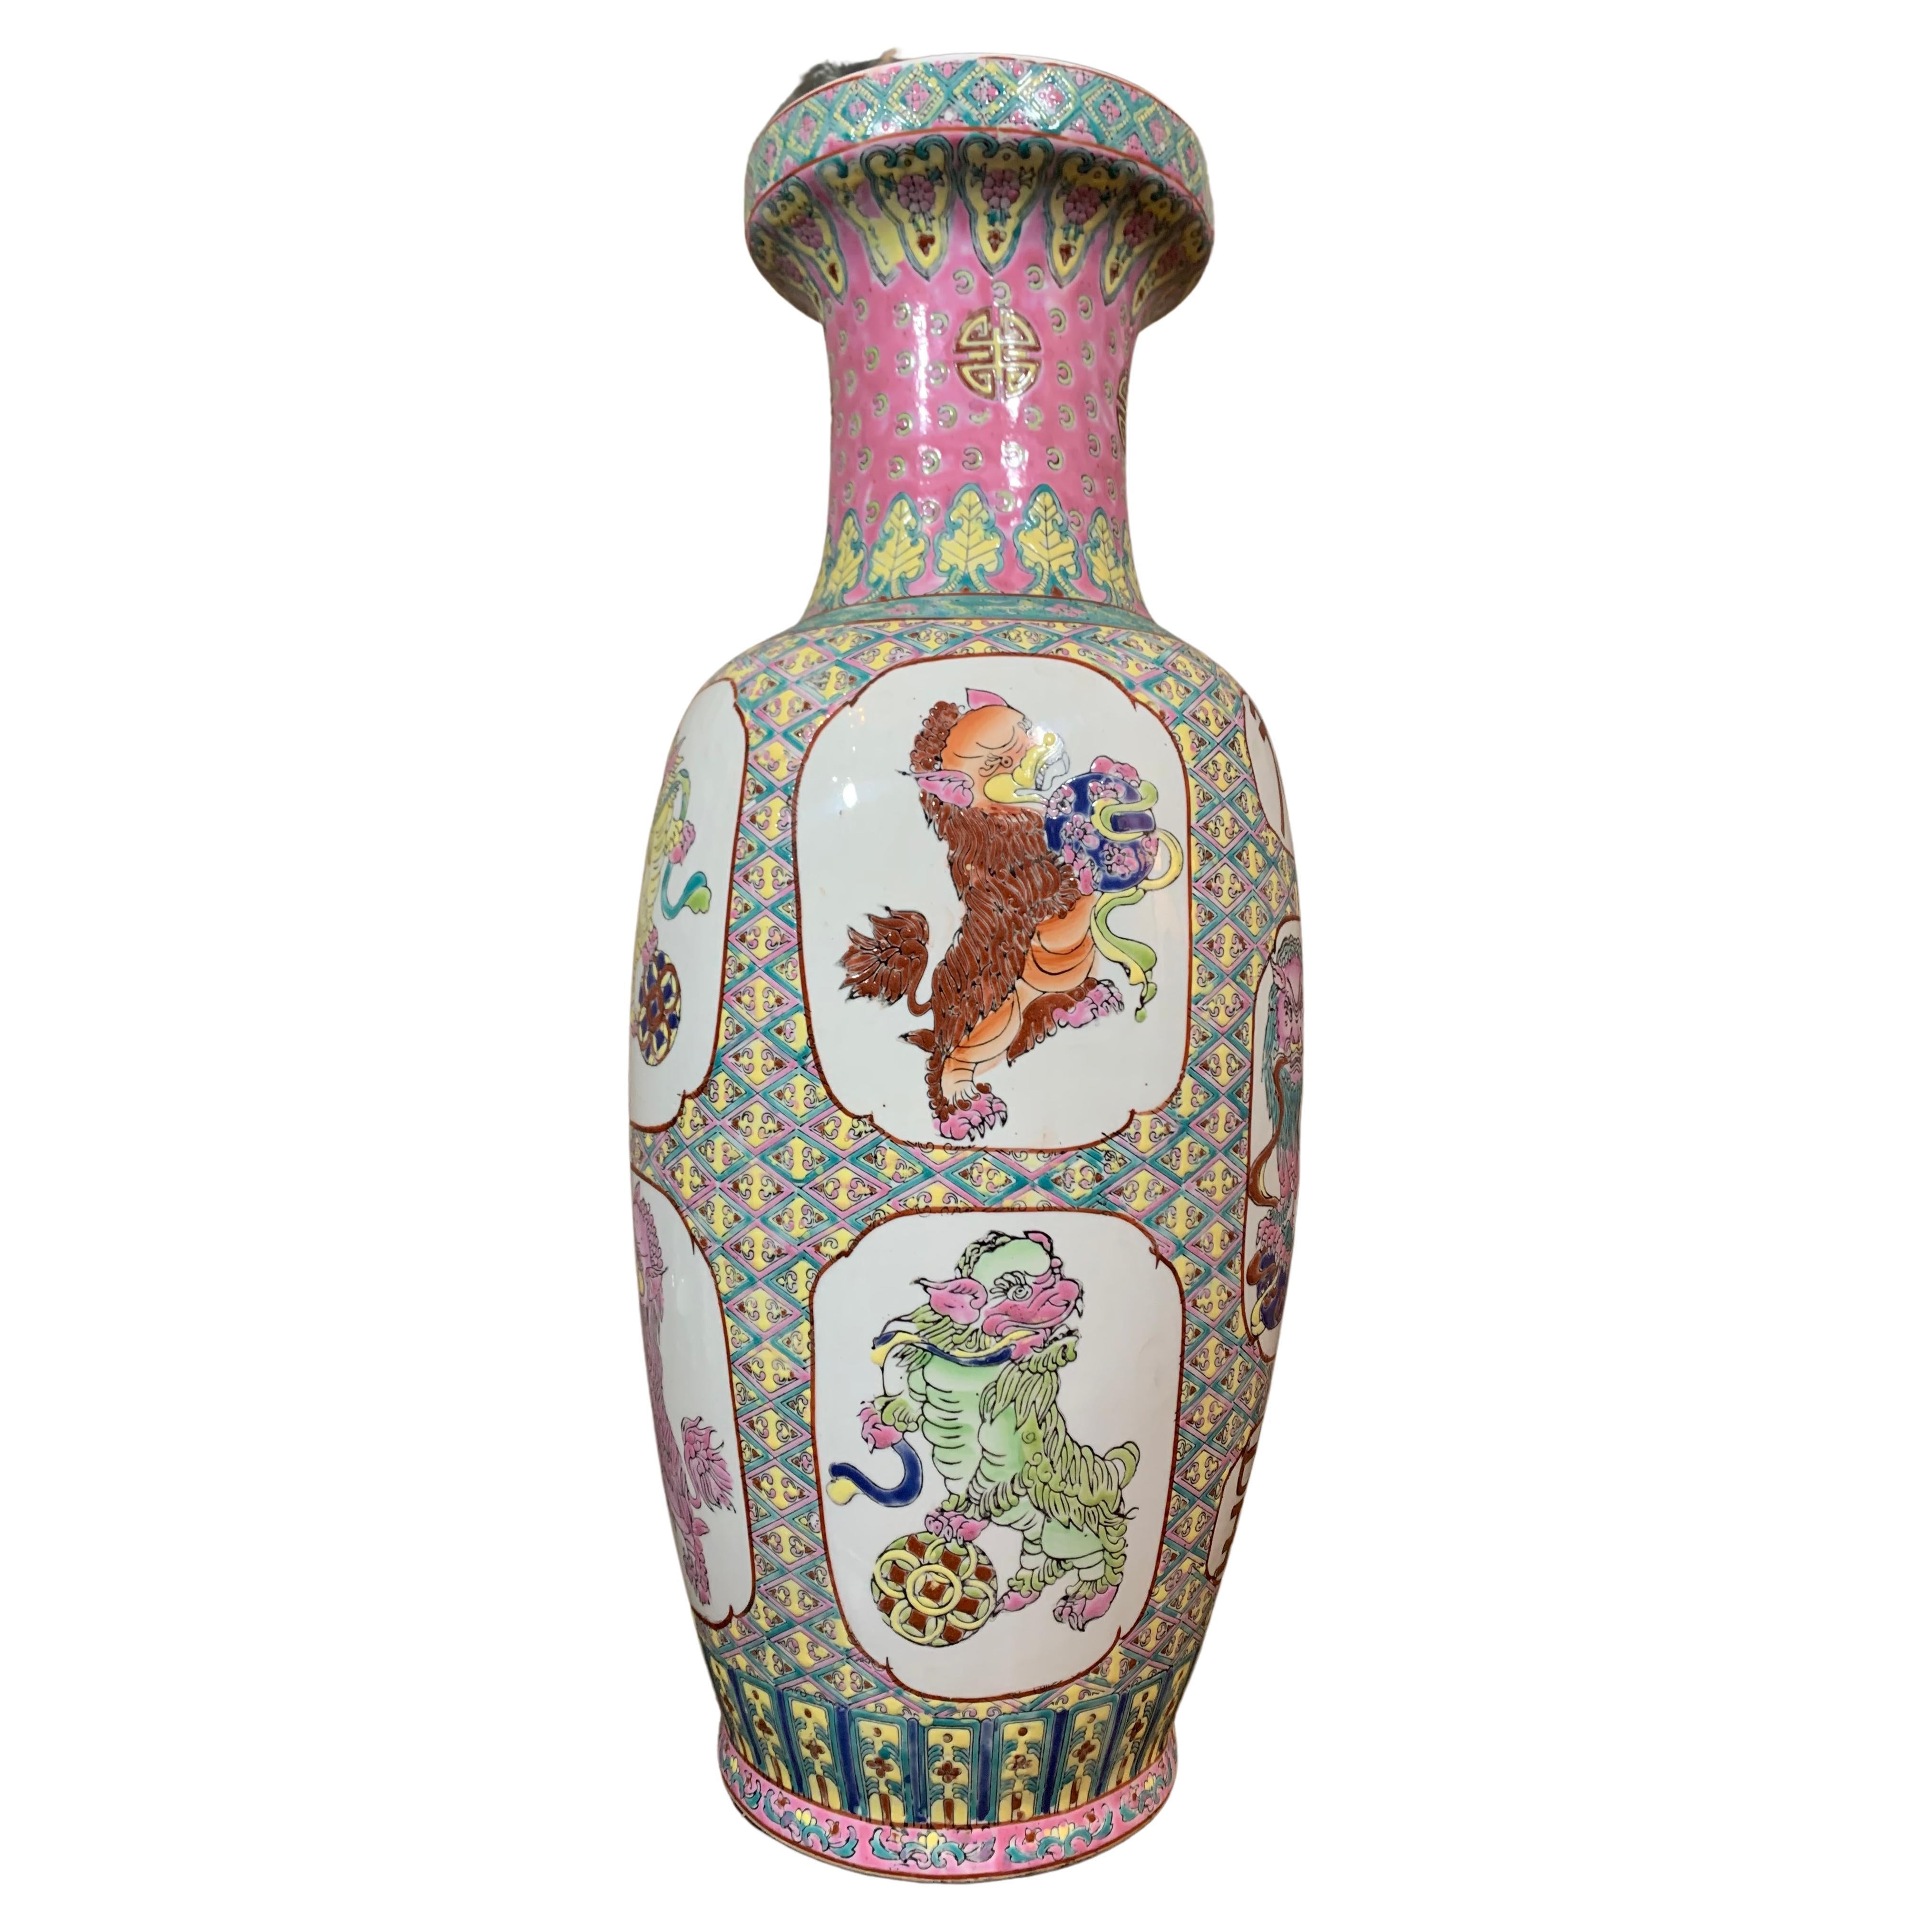 Ce grand vase est en porcelaine de Canton, fabriquée en Chine au début du XXe siècle. Ce vase a des poignées doubles sur les deux côtés, avec des formes animales et dorées. On peut voir des décorations en résine, qui sont des espaces blancs souvent